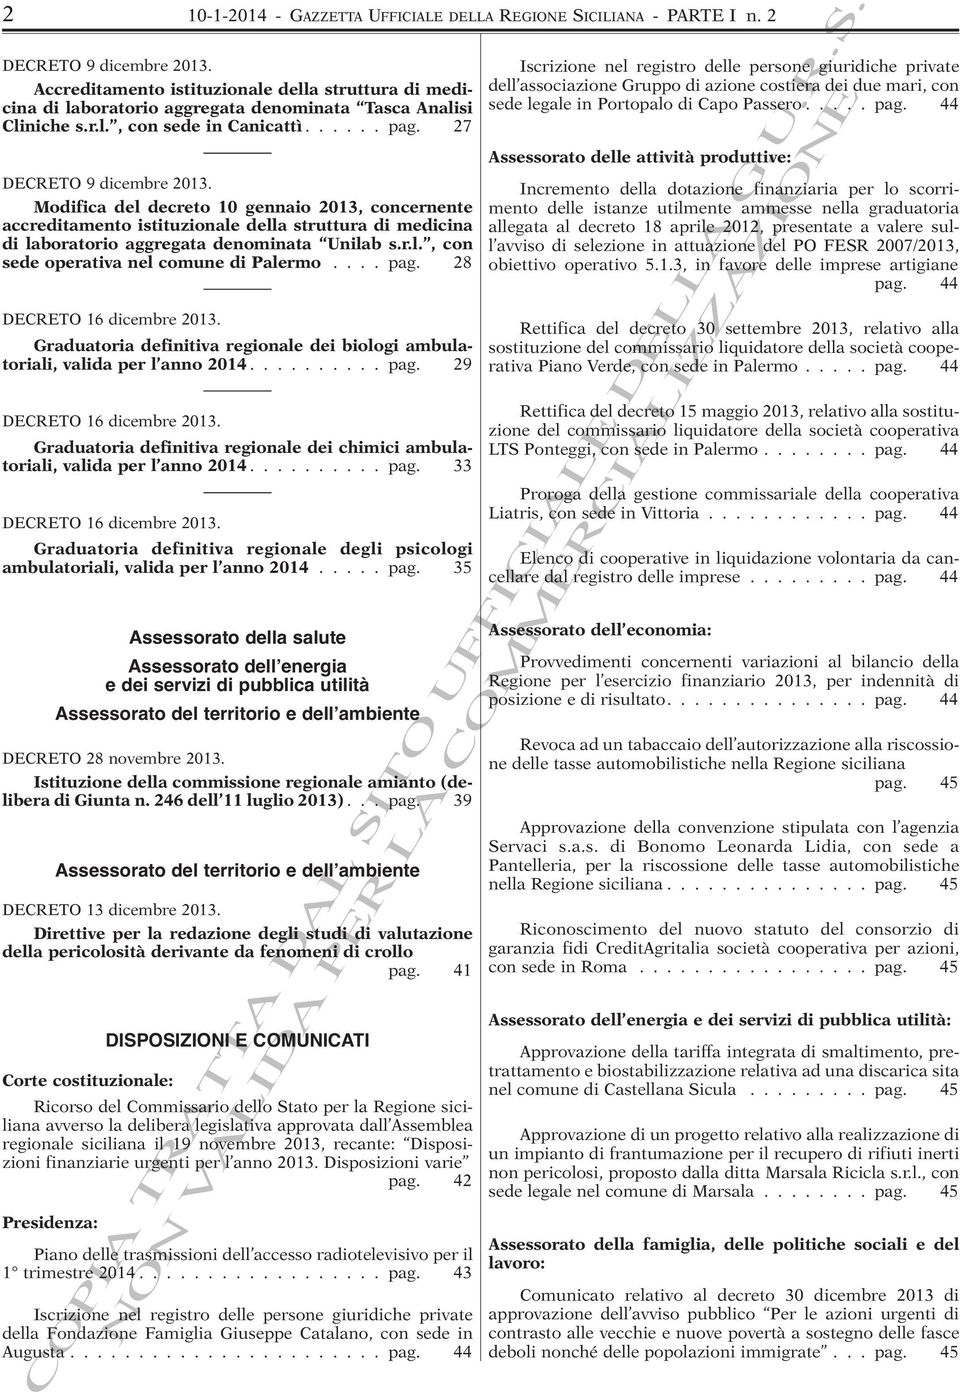 Modifica del decreto 10 gennaio 2013, concernente accreditamento istituzionale della struttura di medicina di laboratorio aggregata denominata Unilab s.r.l., con sede operativa nel comune di Palermo.